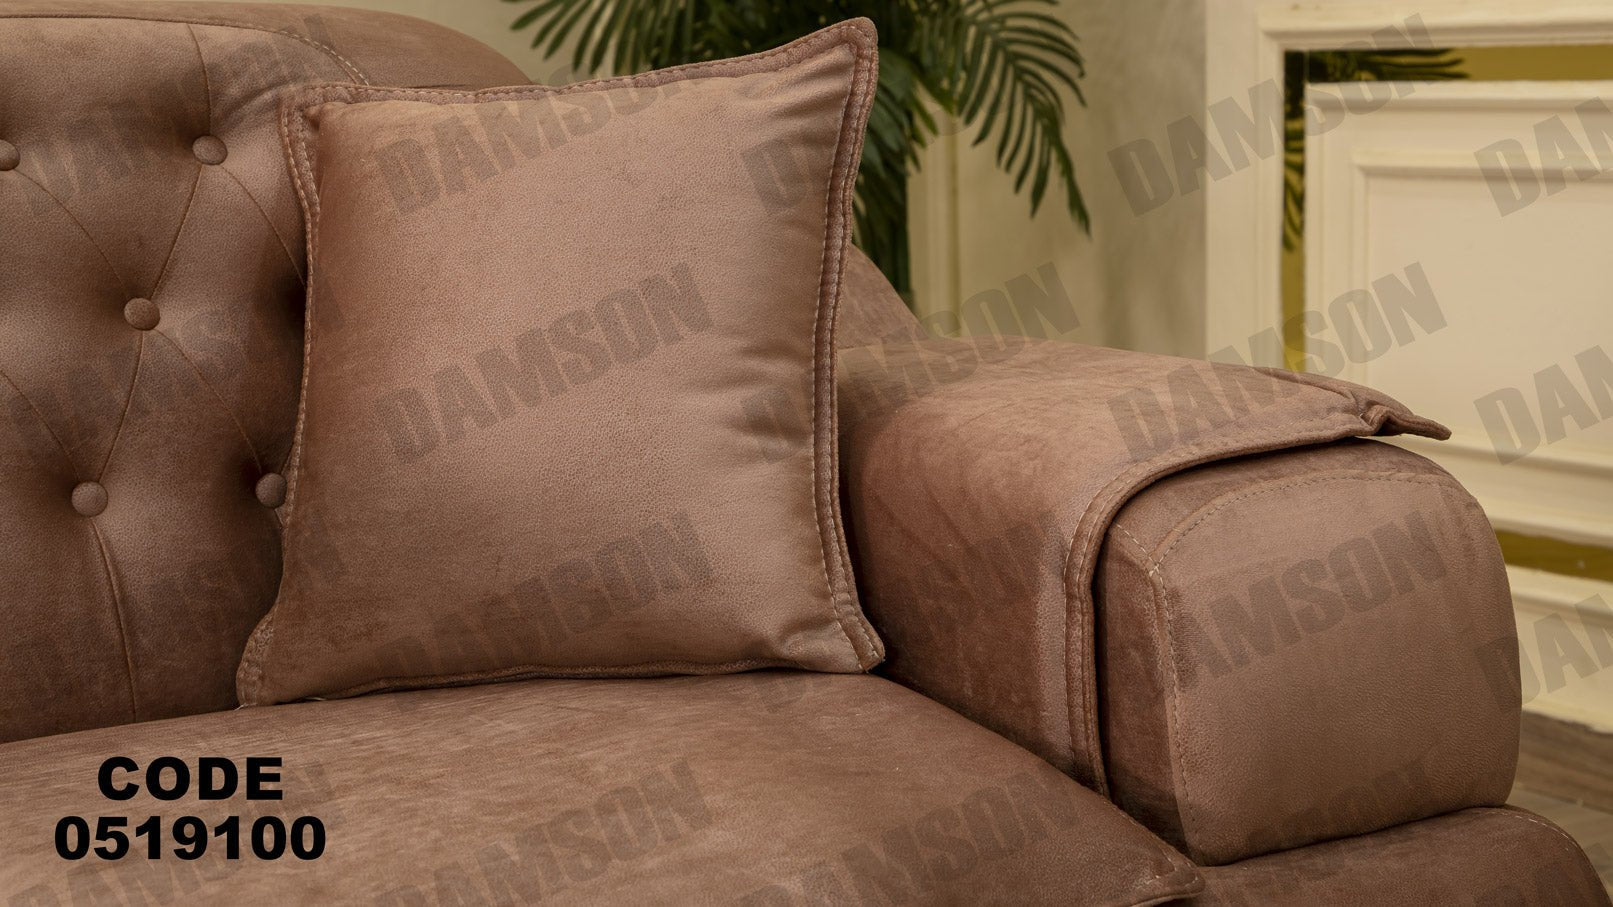 انترية 191 - Damson Furnitureانترية 191